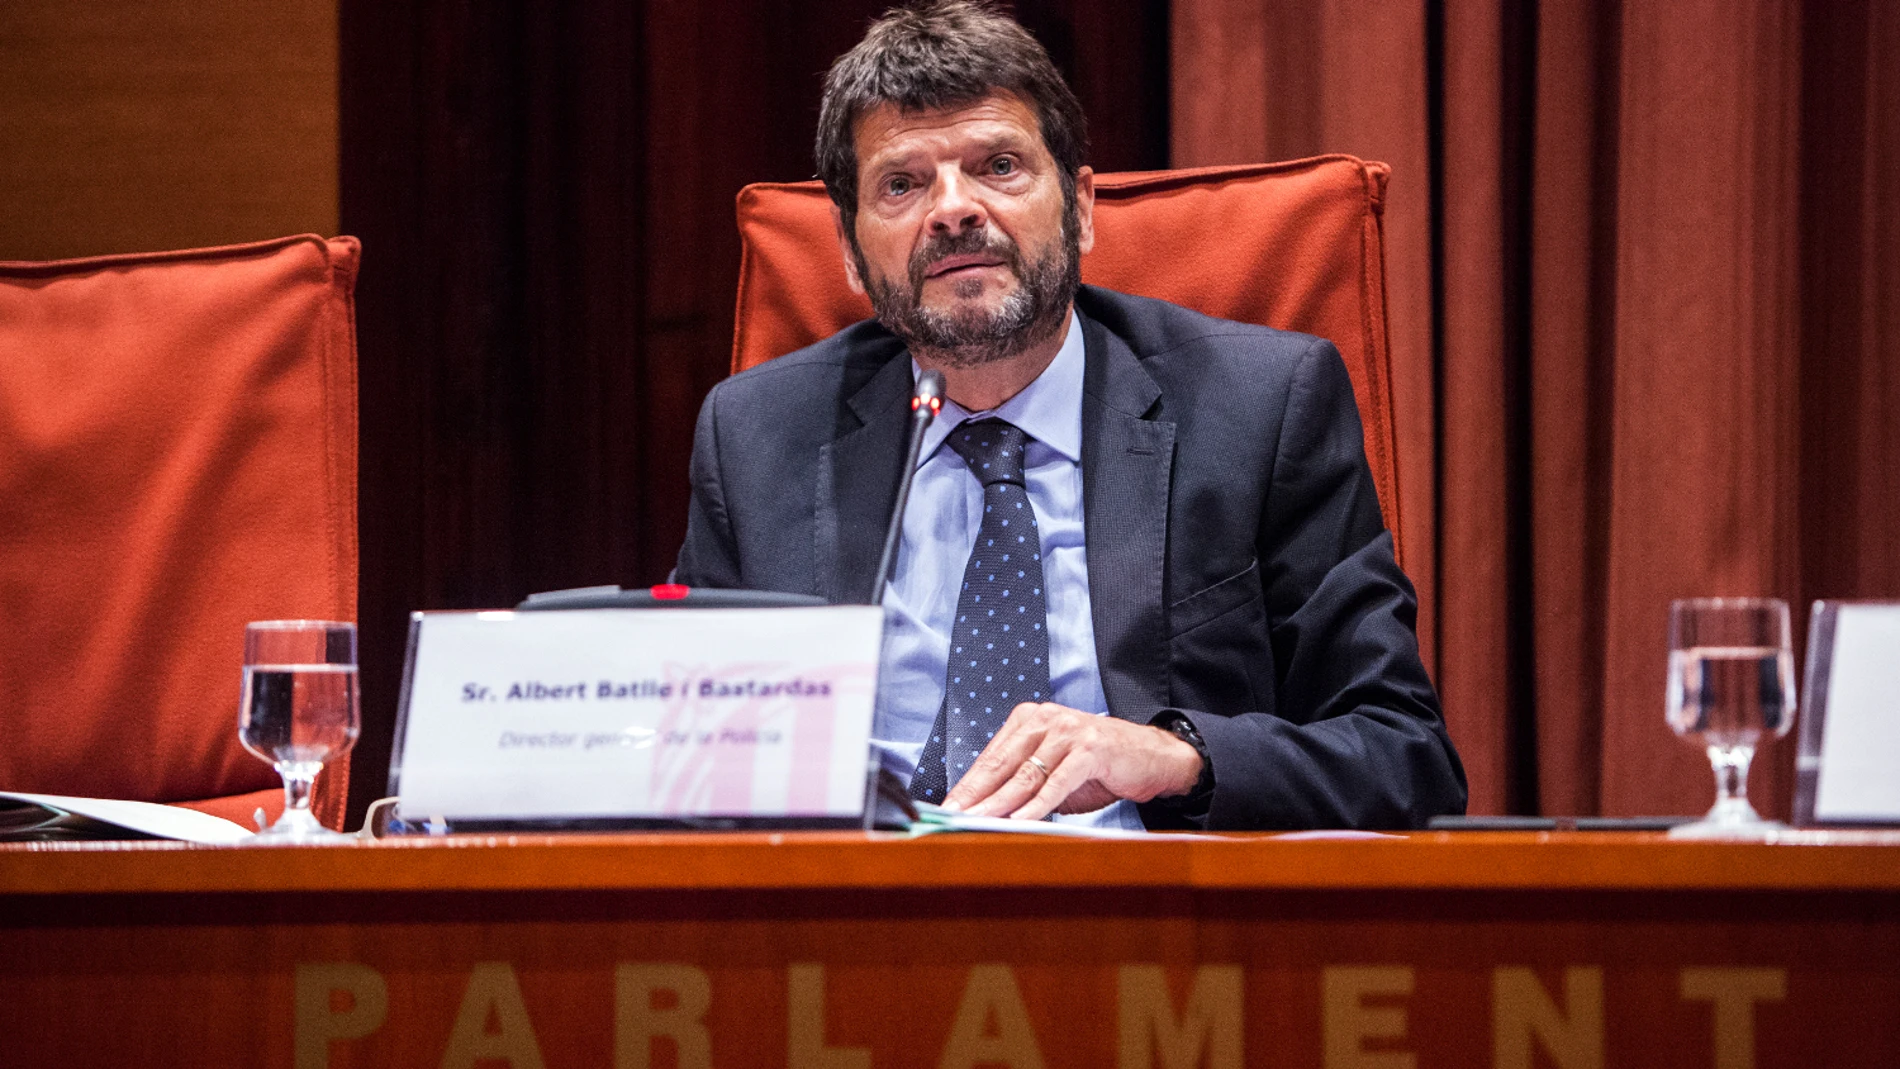 El nuevo responsable de Seguridad del Ayuntamiento y ex director de los Mossos, Albert Batlle